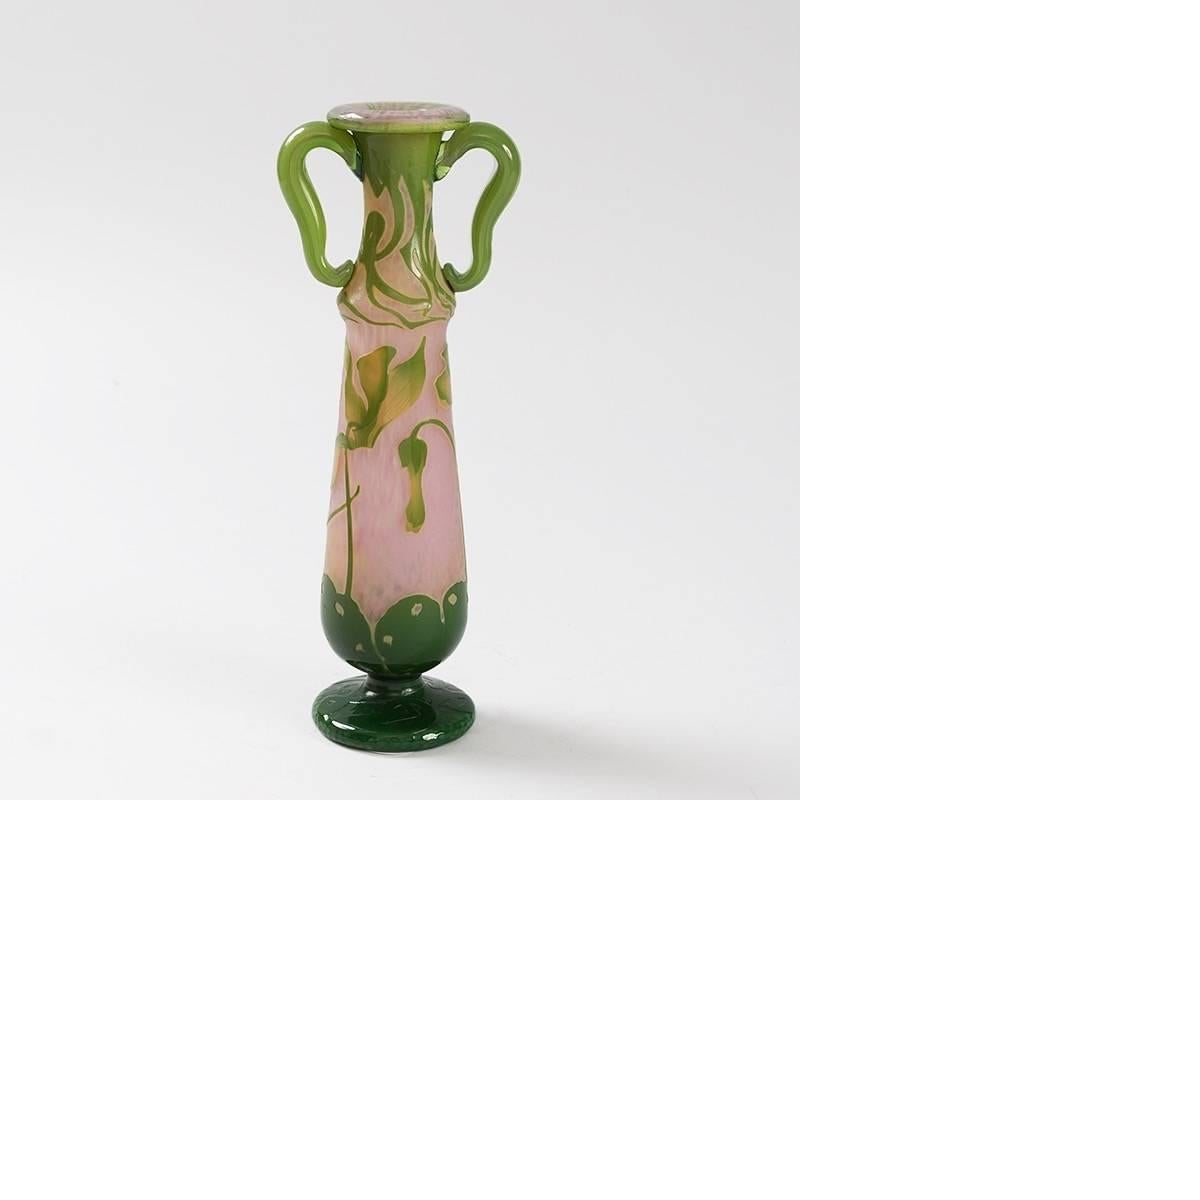 Un vase français en verre émaillé et gravé avec des poignées appliquées par Daum. Le vase a un fond martelé rose. Il y a une sculpture sur la base à pied vert foncé. Elle est décorée de fleurs et de vignes vertes plus claires sculptées à la roue.